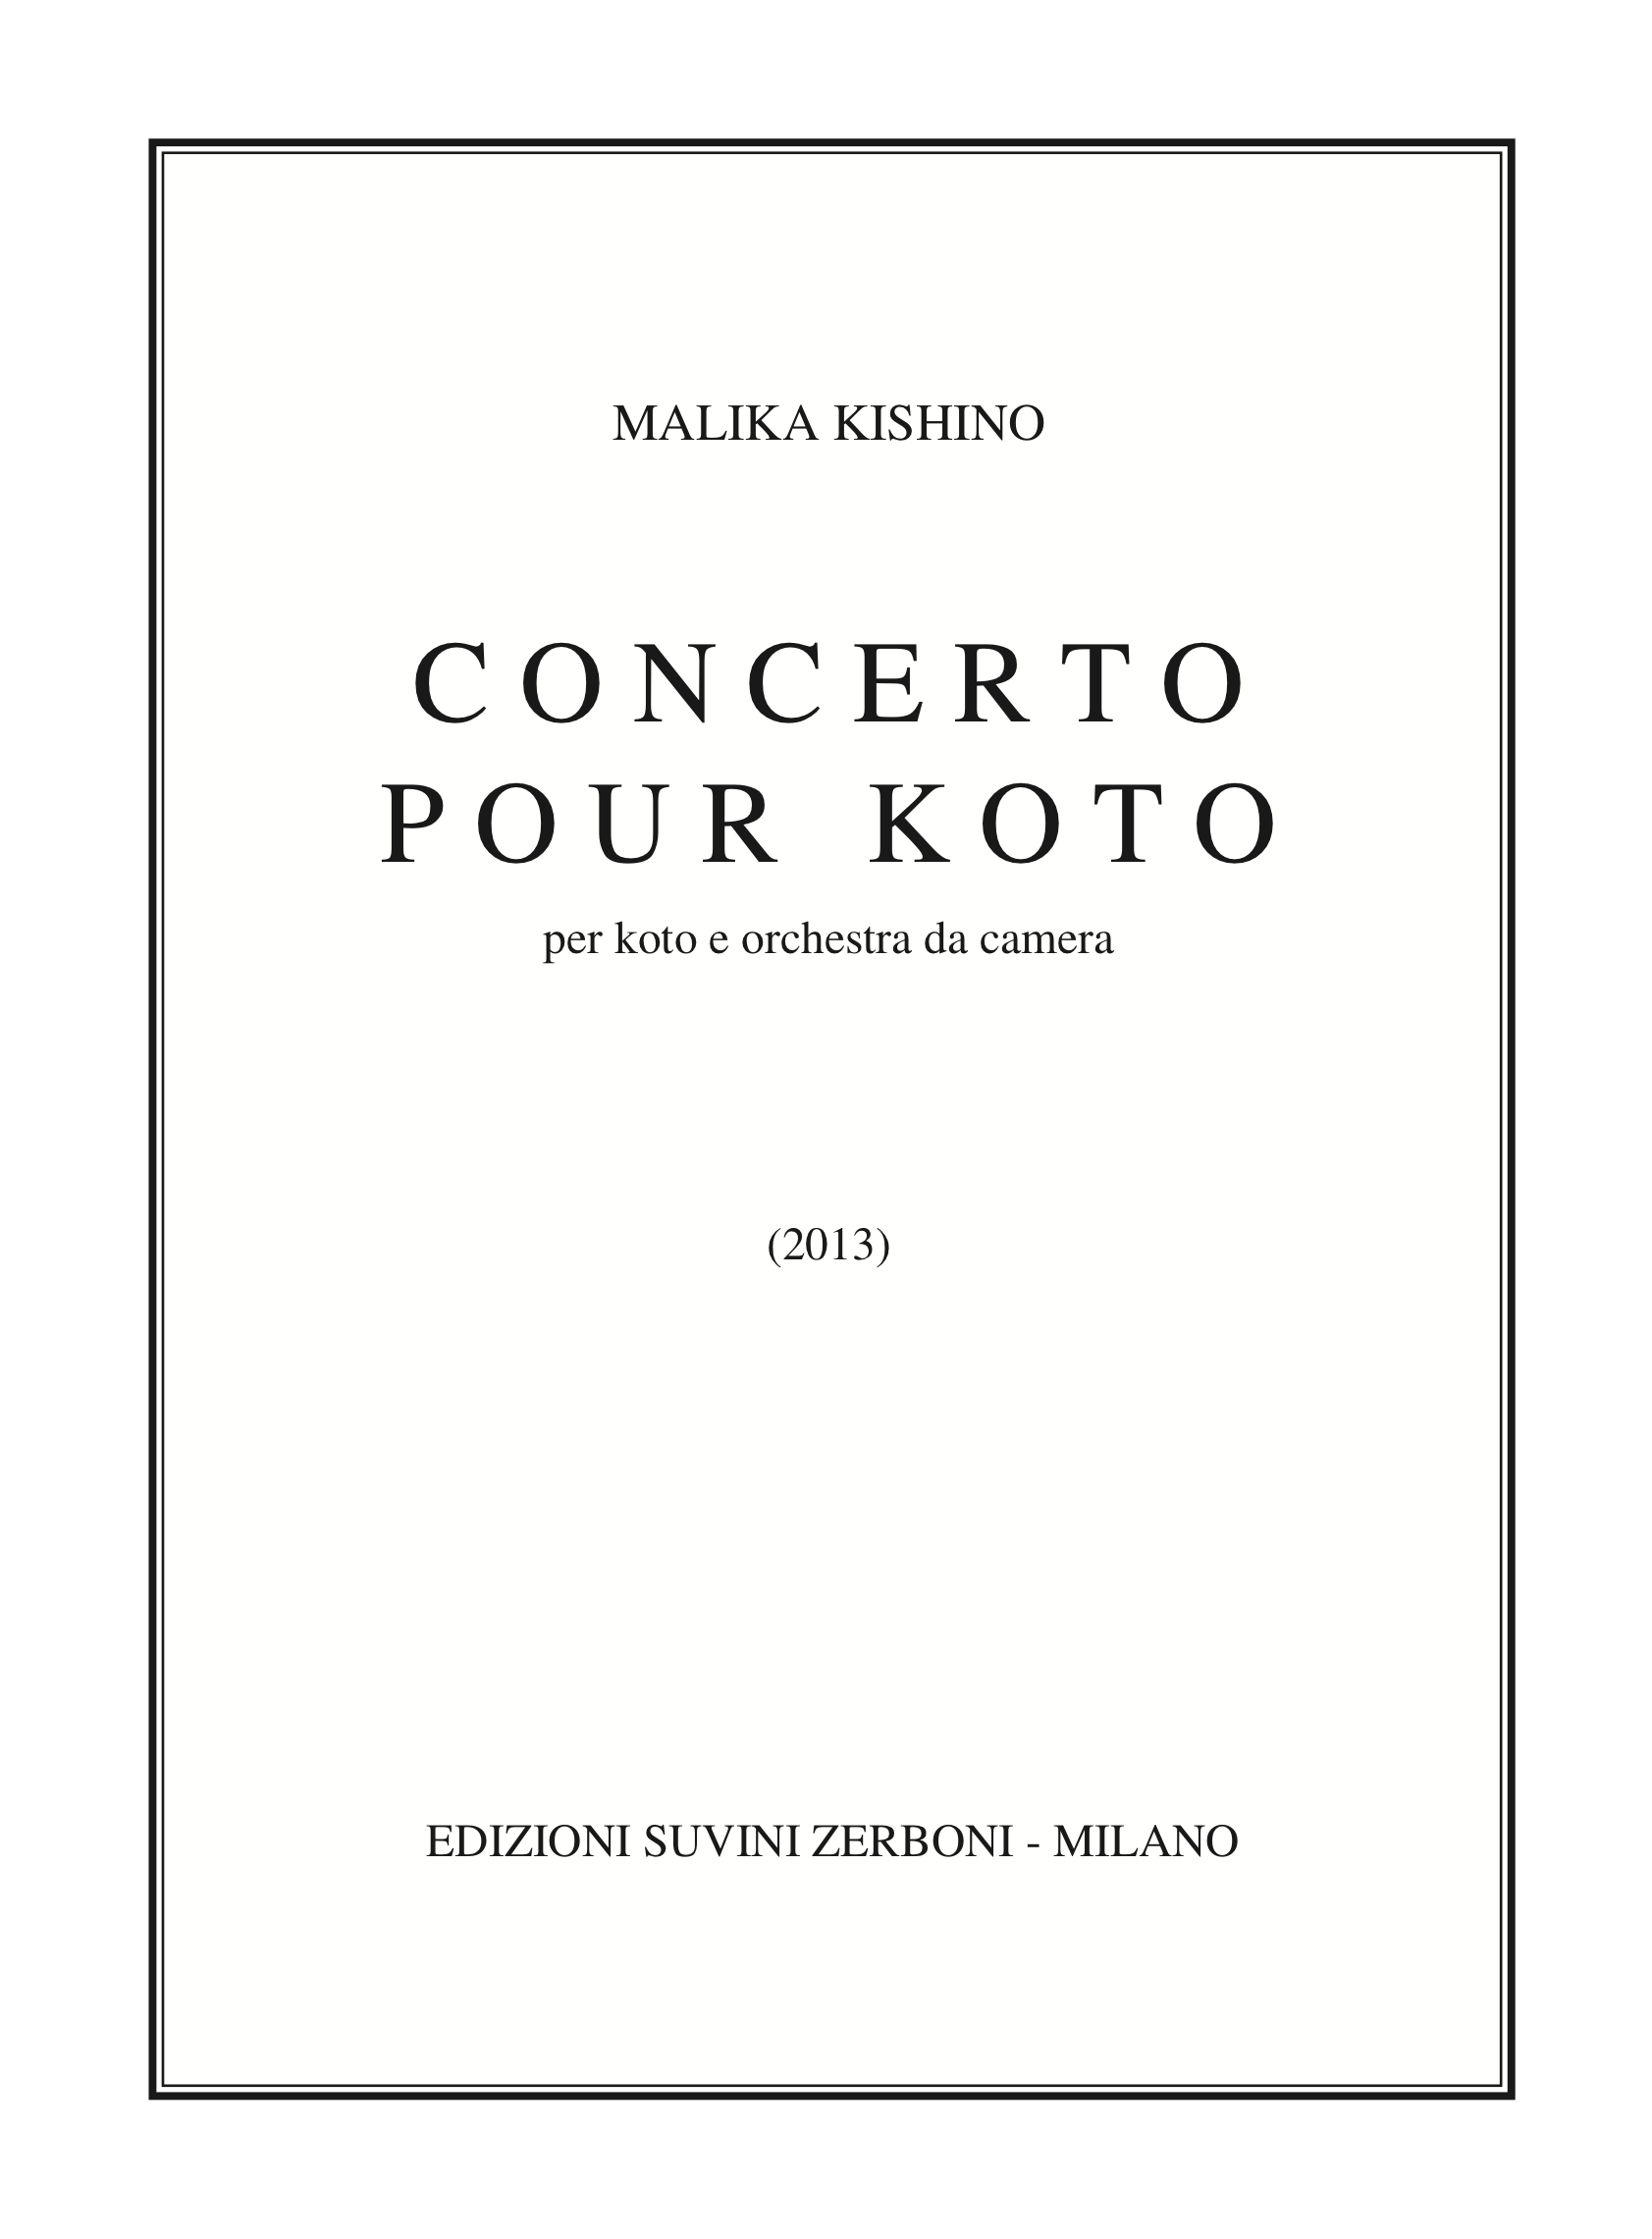 Concerto pour koto_Kishino 1